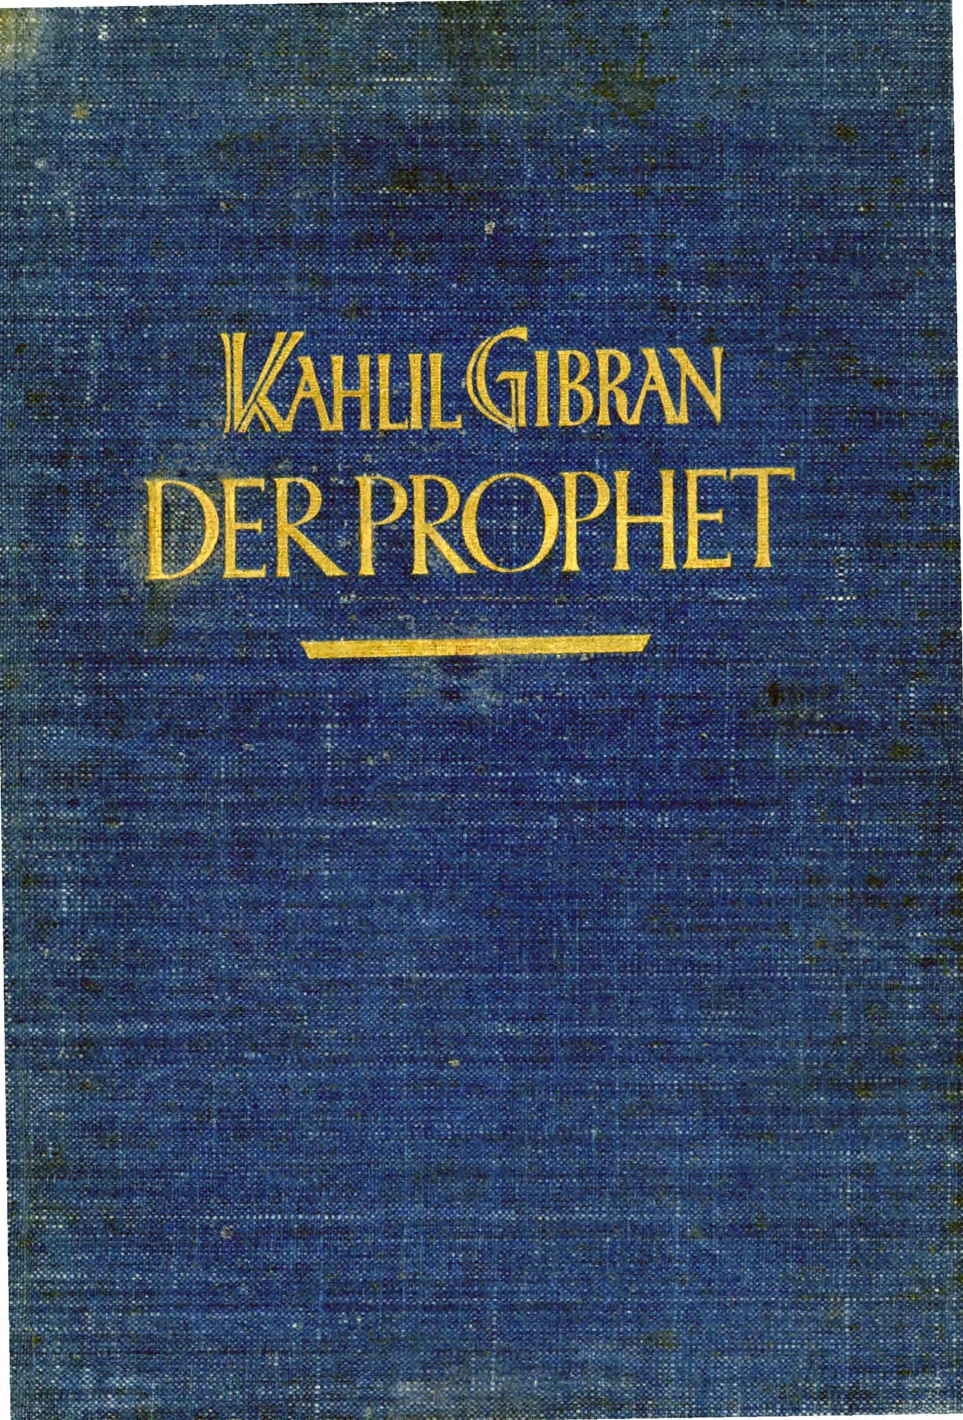 K. Gibran, Der Prophet (The Prophet), translated into German by Georg-Eduard Freiherr von Stietencron, München: Hyperionverlag, 1925.